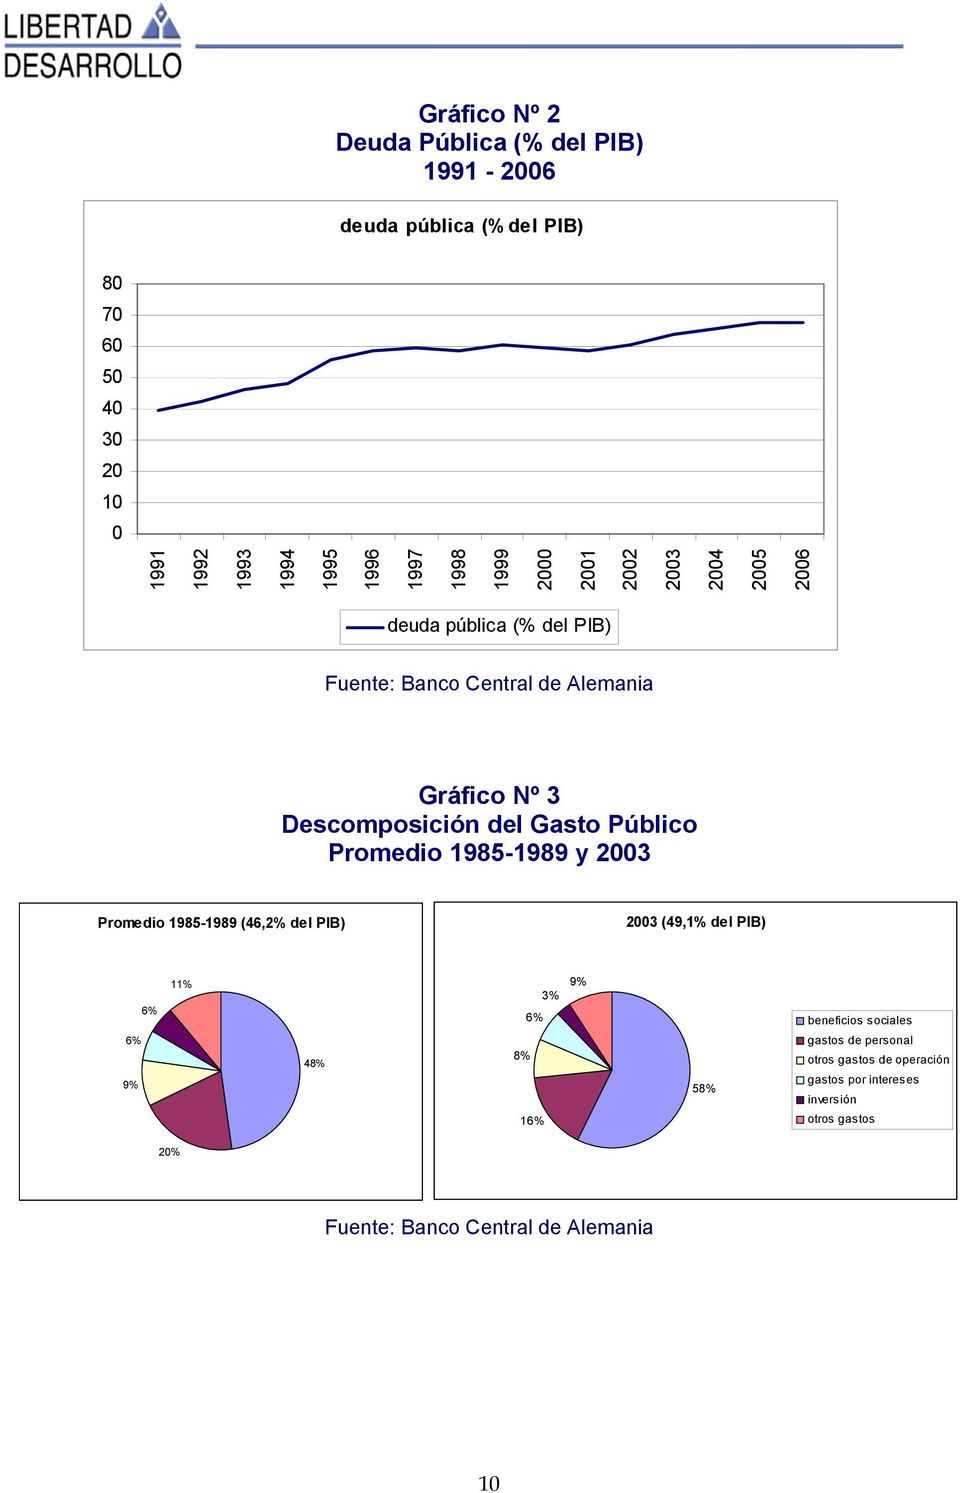 Promedio 1985-1989 y 23 Promedio 1985-1989 (46,2% del PIB) 23 (49,1% del PIB) 6% 9% 6% 11% 48% 3% 6% 8% 16% 9% 58% beneficios